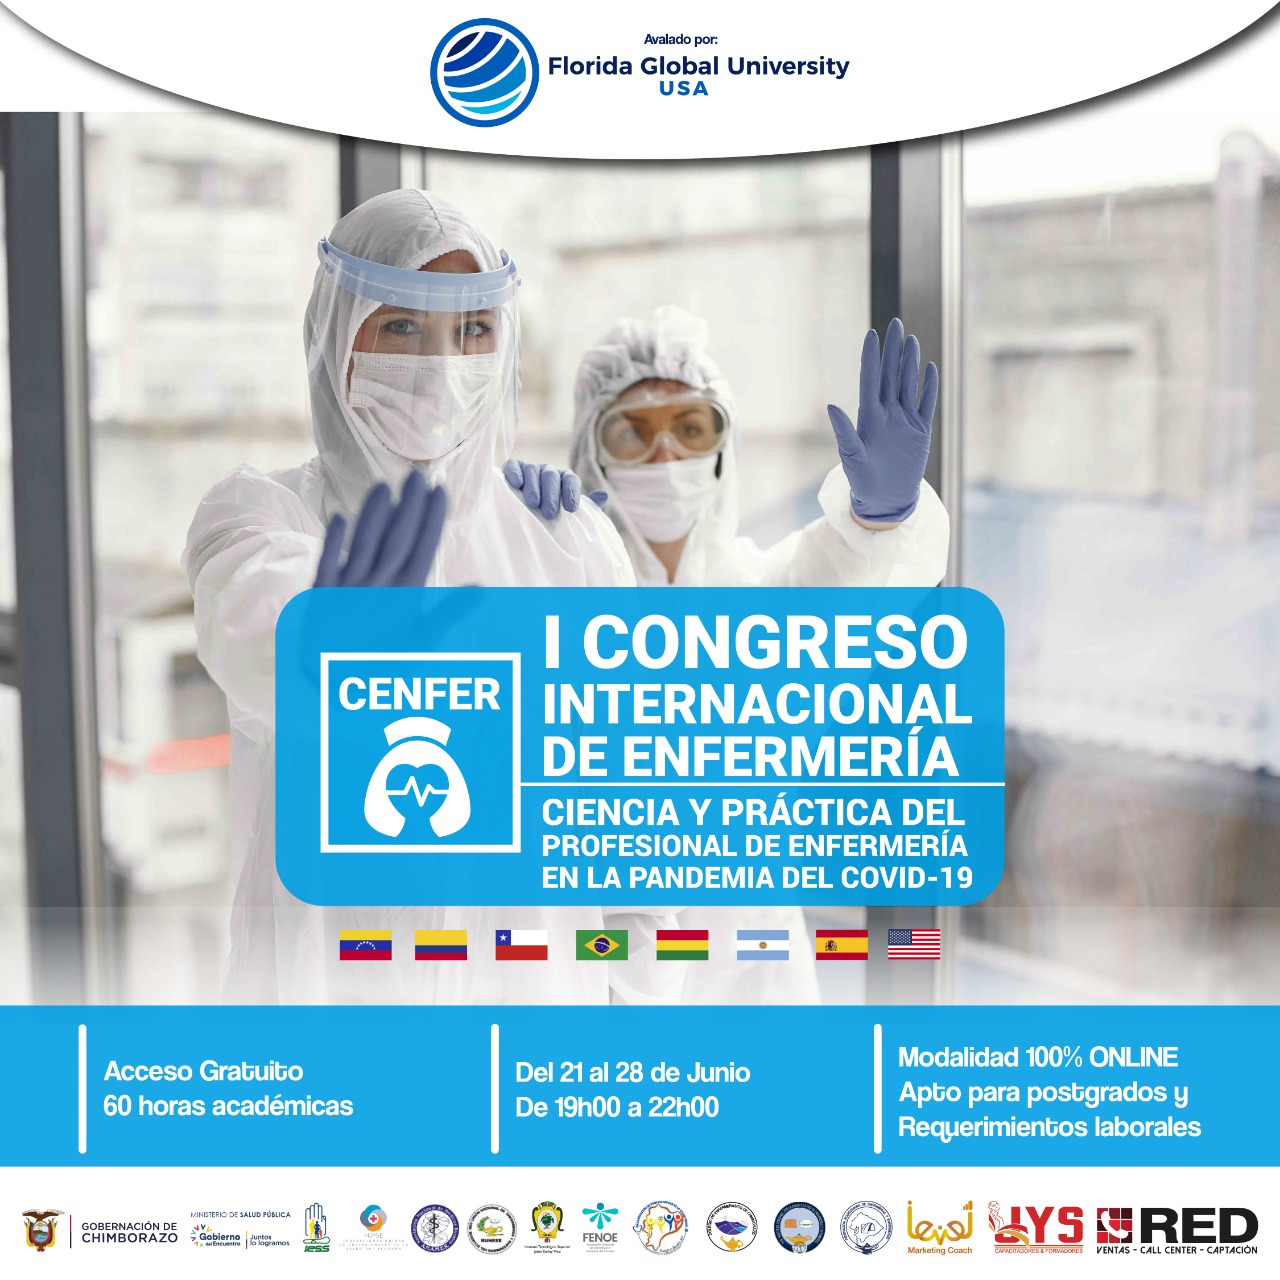 I Congreso Internacional de Enfermería - Ciencia y Práctica del Profesional de Enfermería en la Pandemia del COVID-19